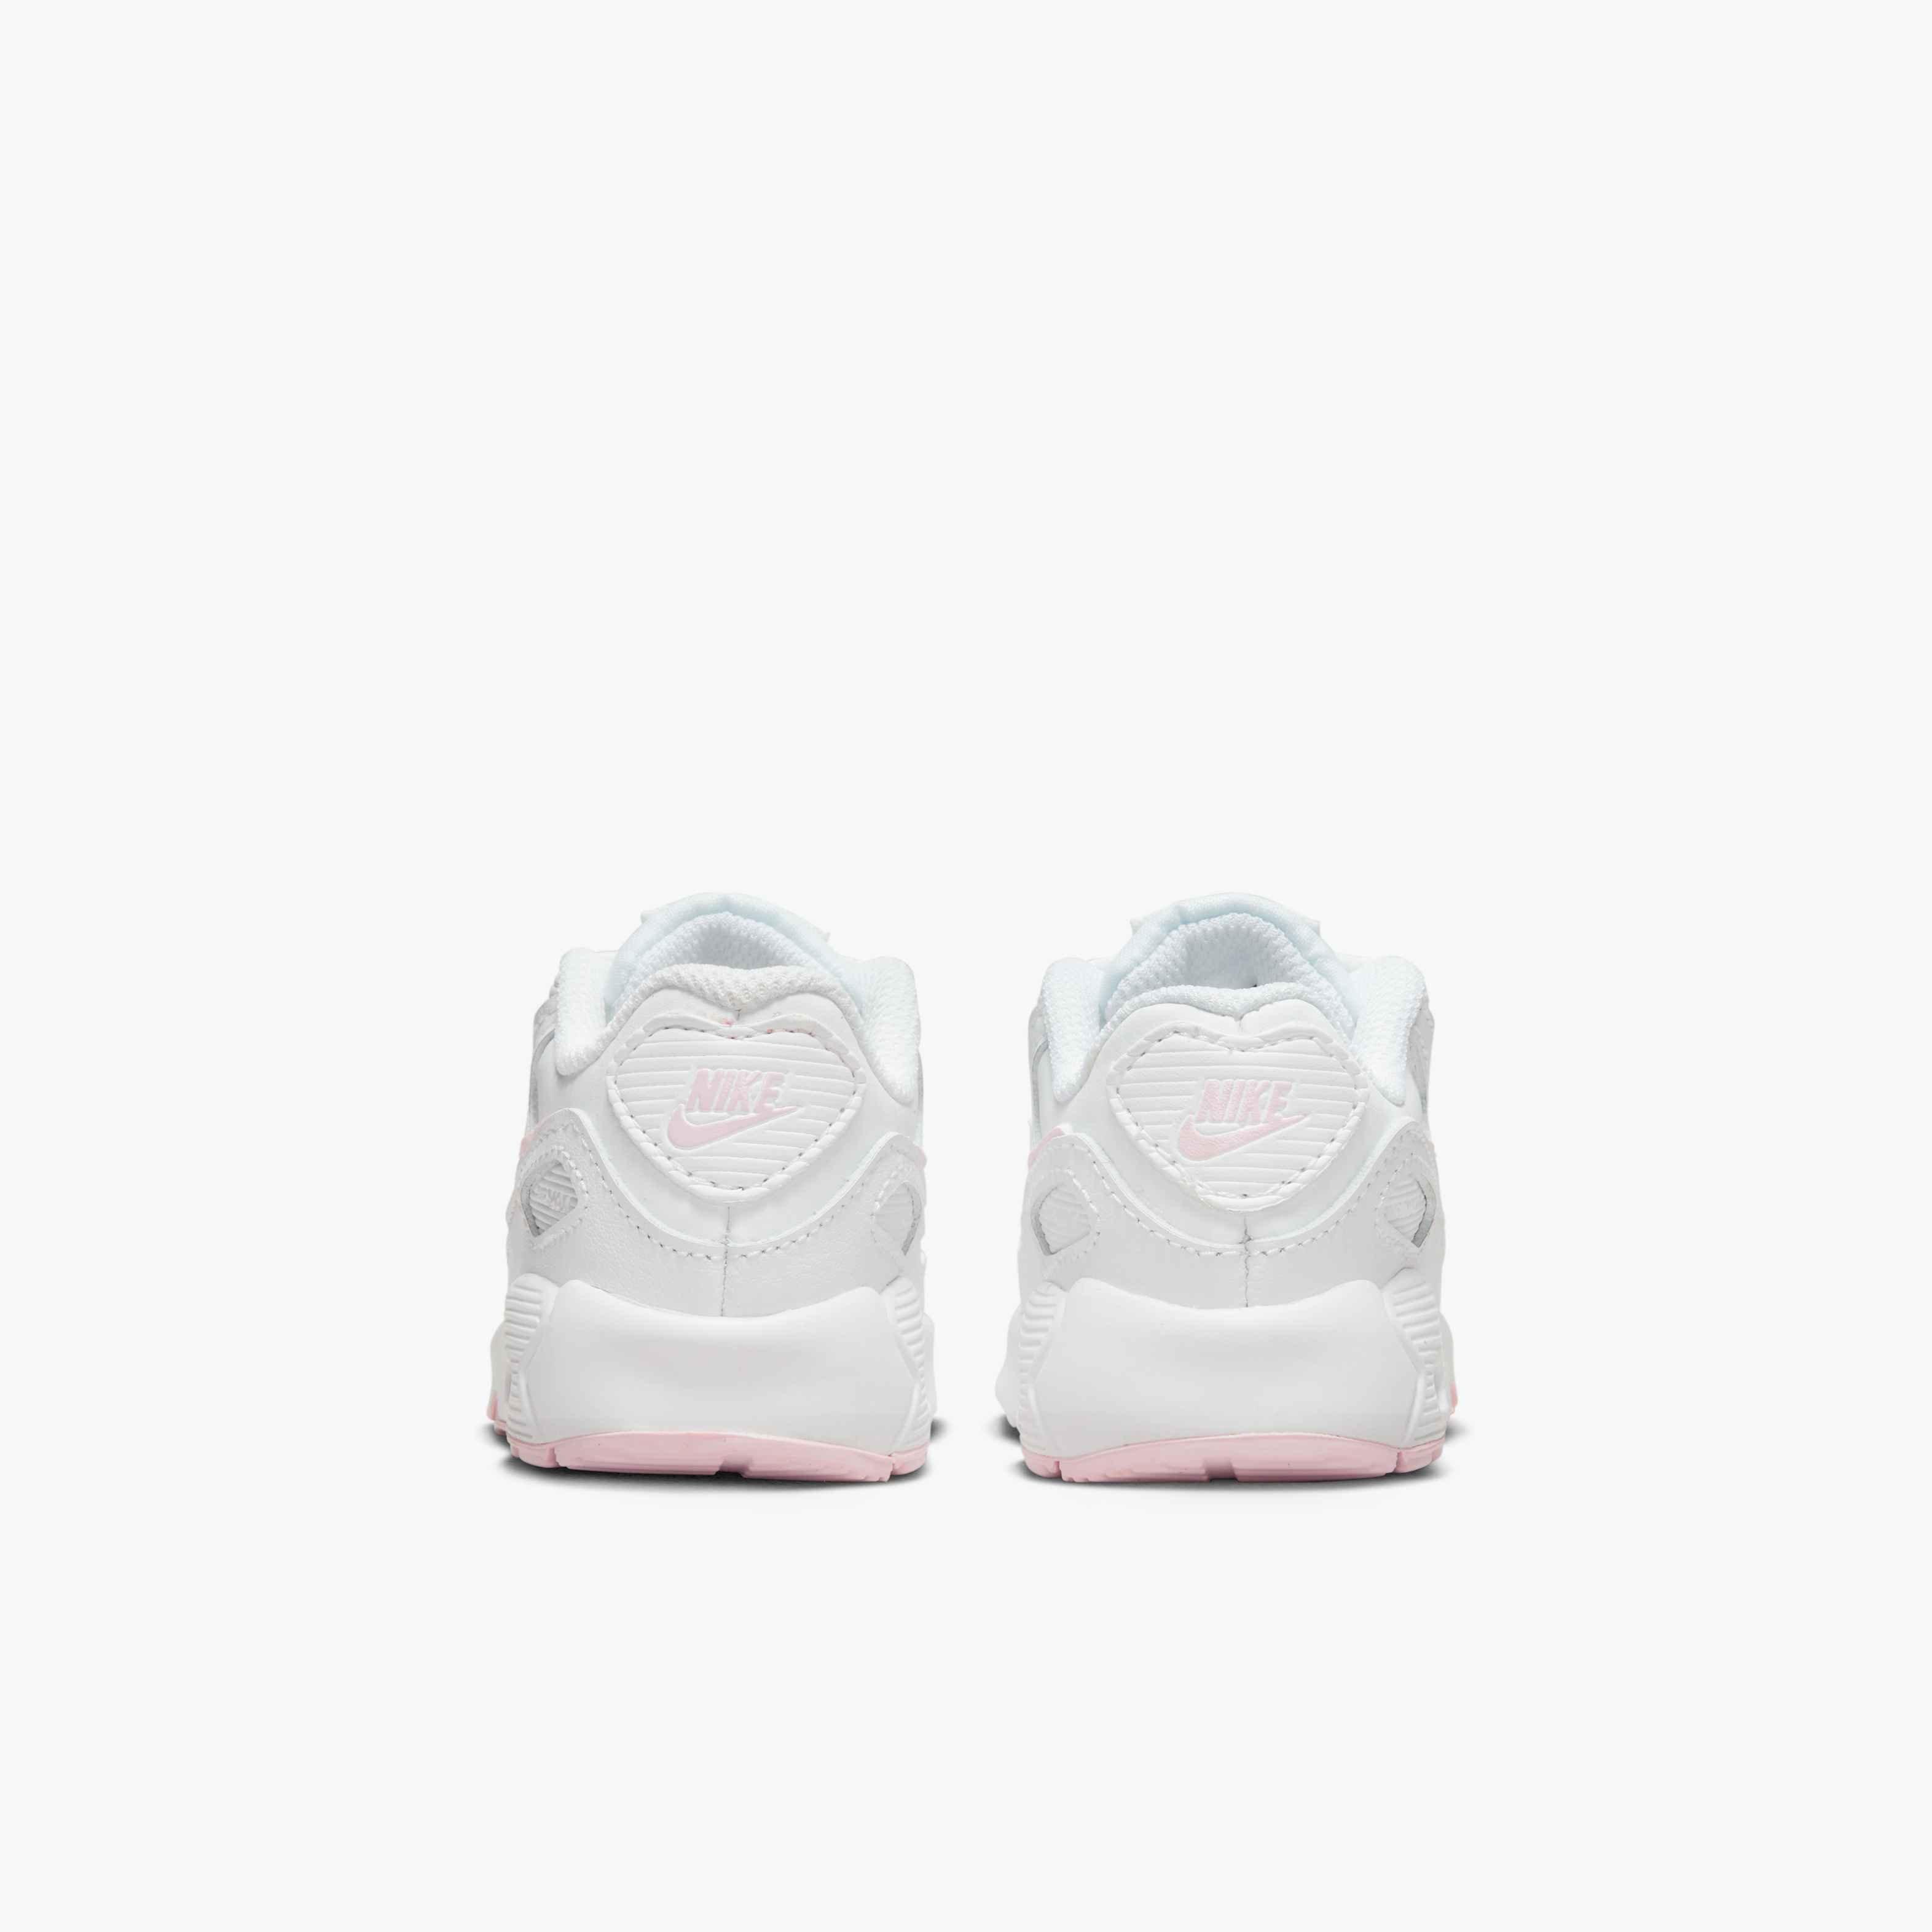 Nike Air Max 90 "White/Pink Foam" Toddler Girls' Shoe